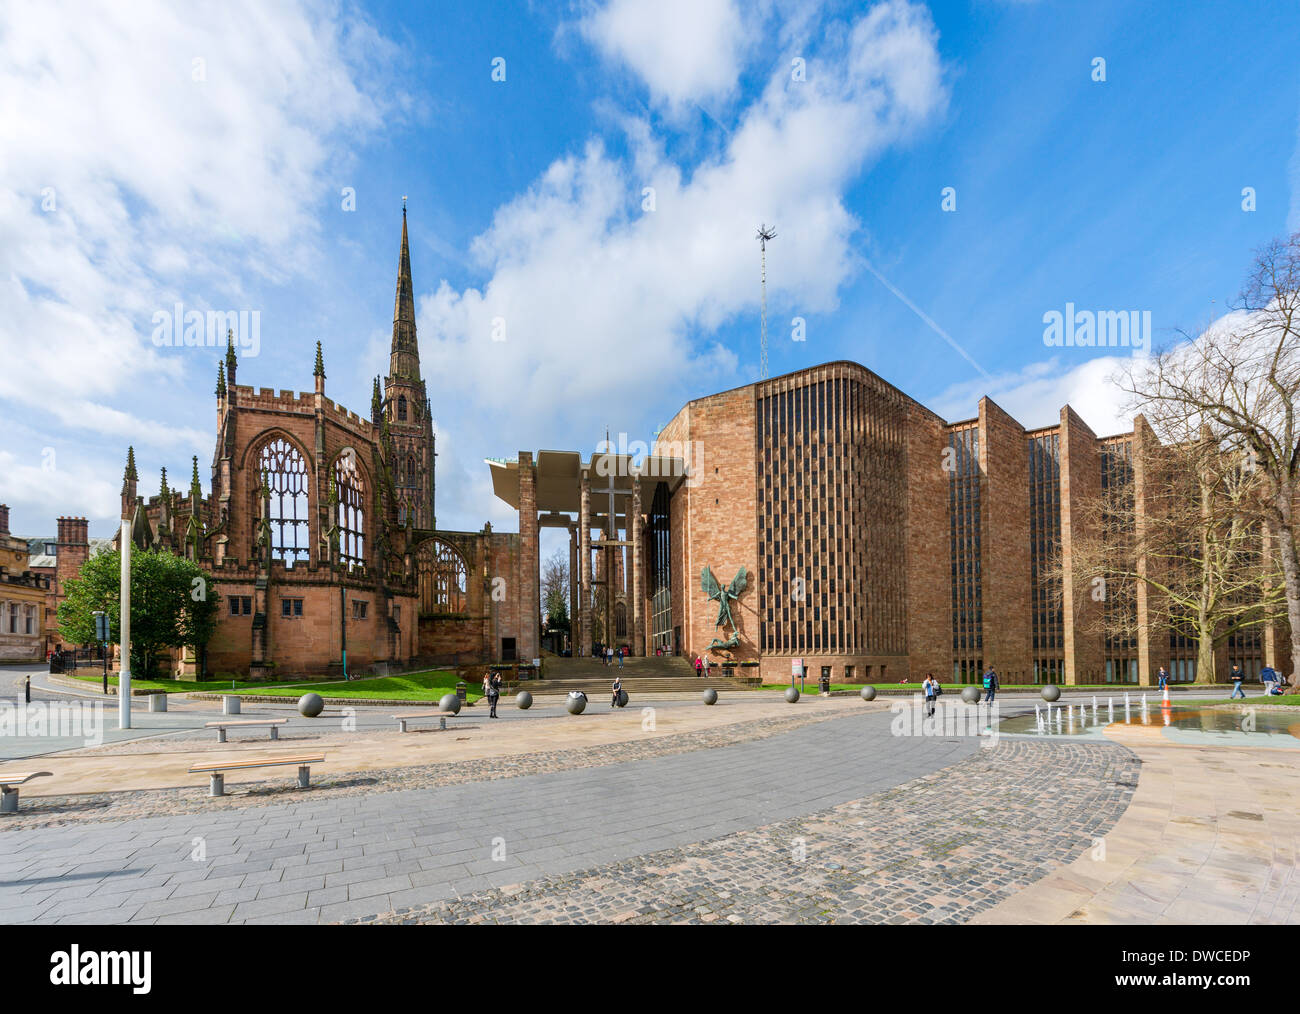 La cathédrale de Coventry (St Michael's) bombardé avec ruines de l'ancienne cathédrale à gauche, Coventry, West Midlands, England, UK Banque D'Images